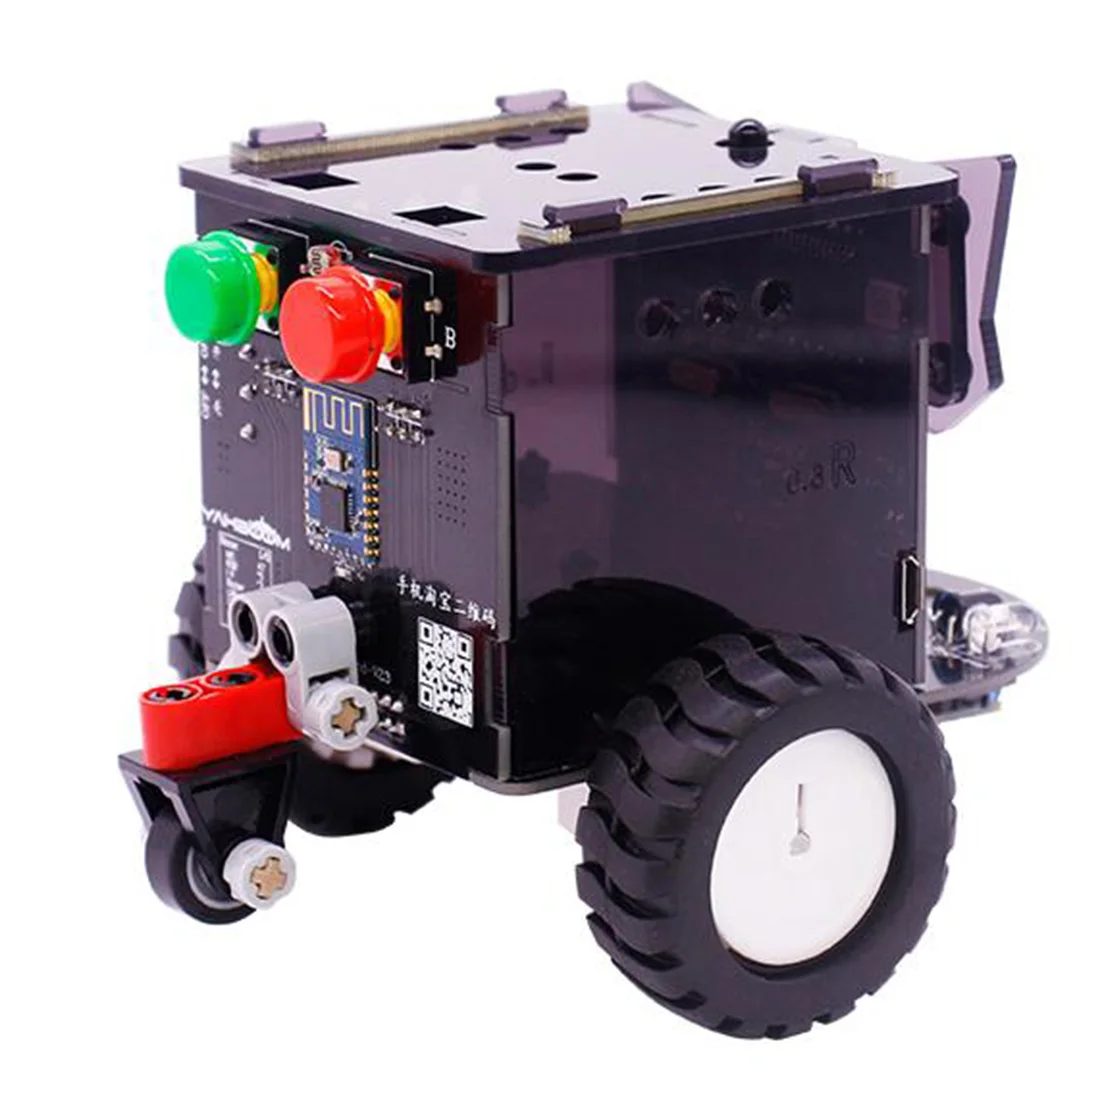 Стандартная версия Omibox скретч программируемый робот-автомобиль набор интеллектуальная программируемая игрушка для детей мальчиков подарок